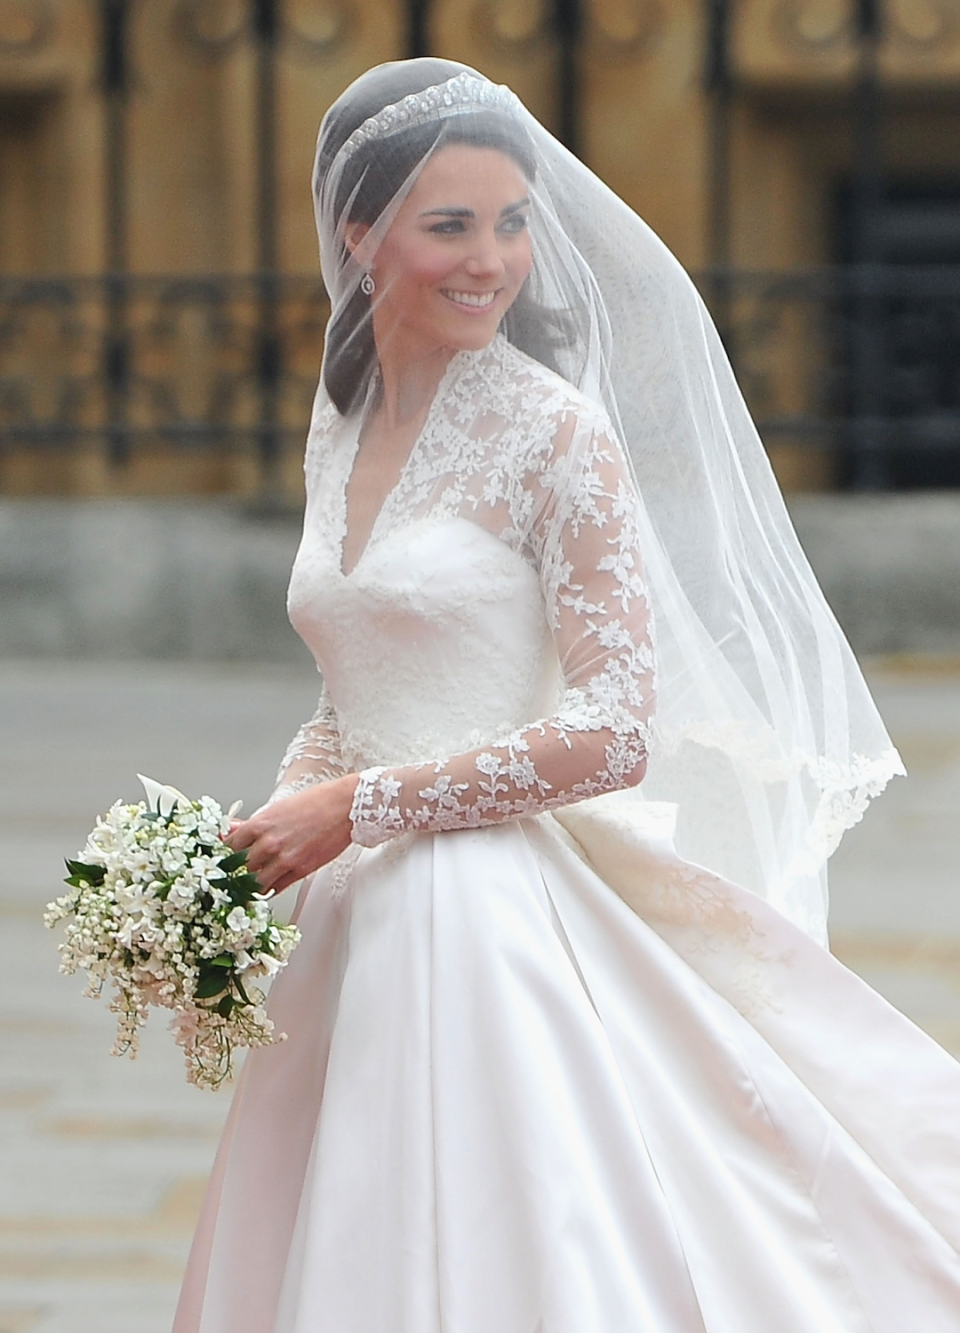 Kate wore the Cartier Halo Tiara as a bride